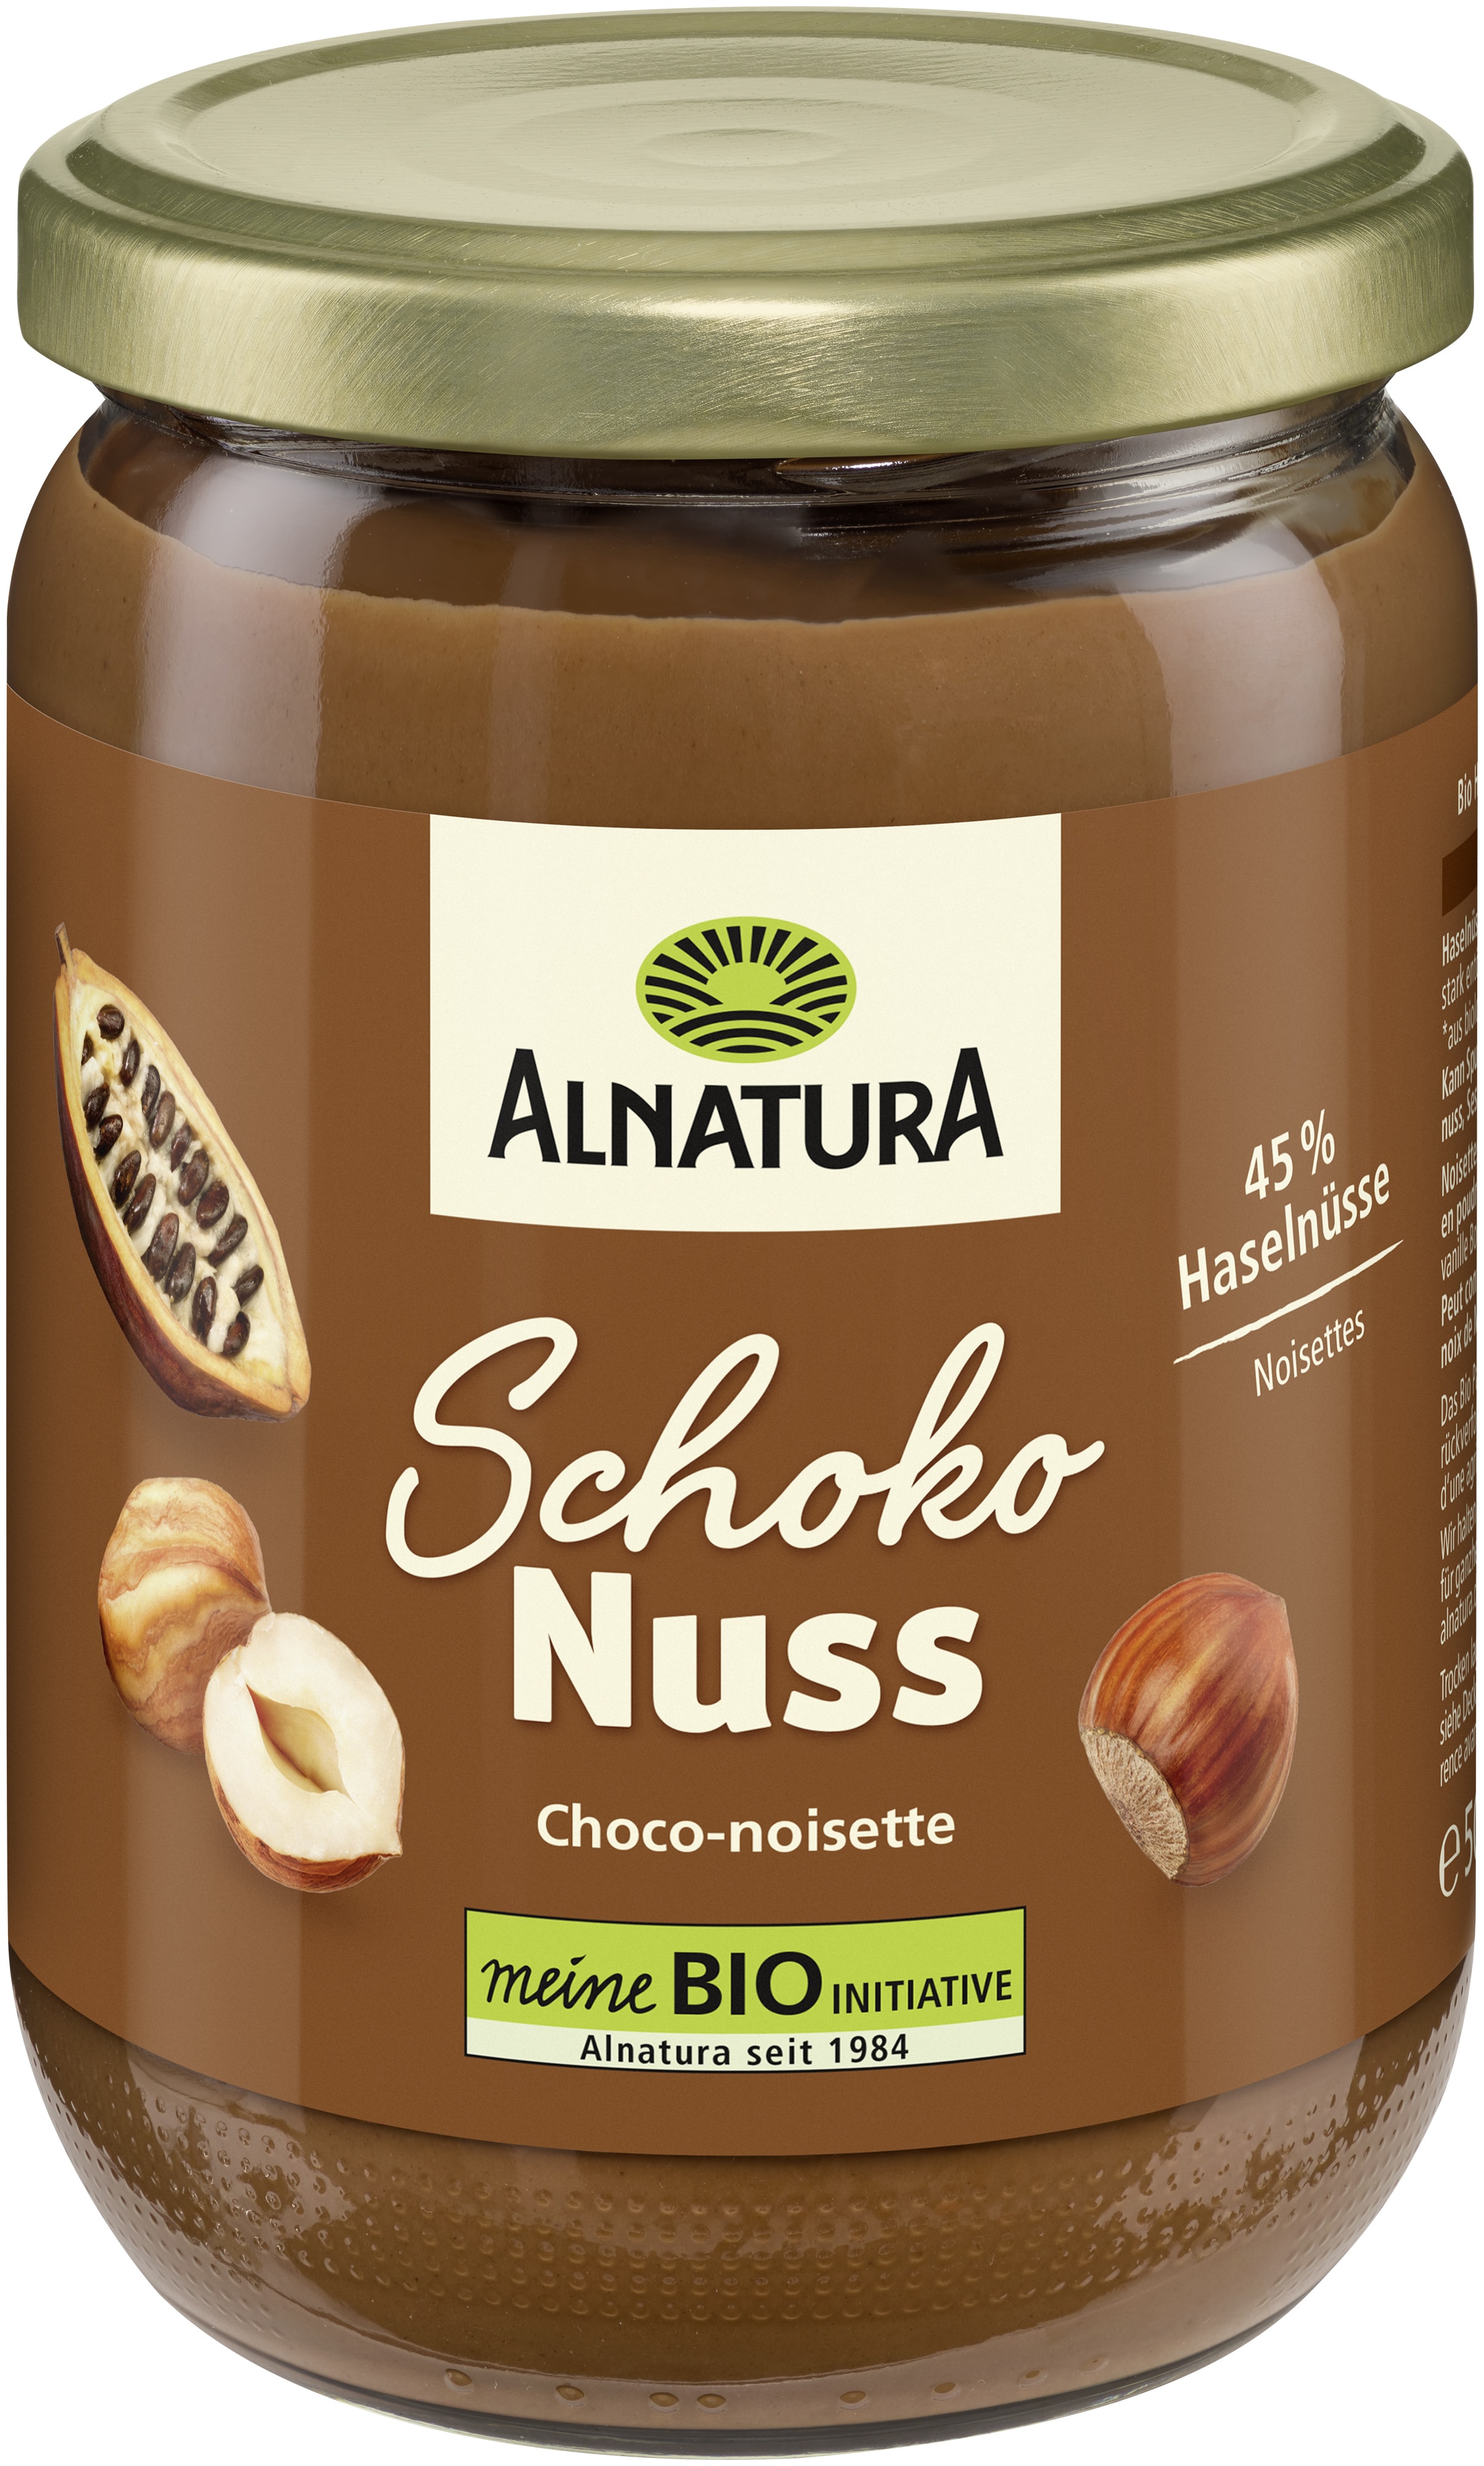 Schoko-Nuss-Creme (500 g) in Bio-Qualität von Alnatura